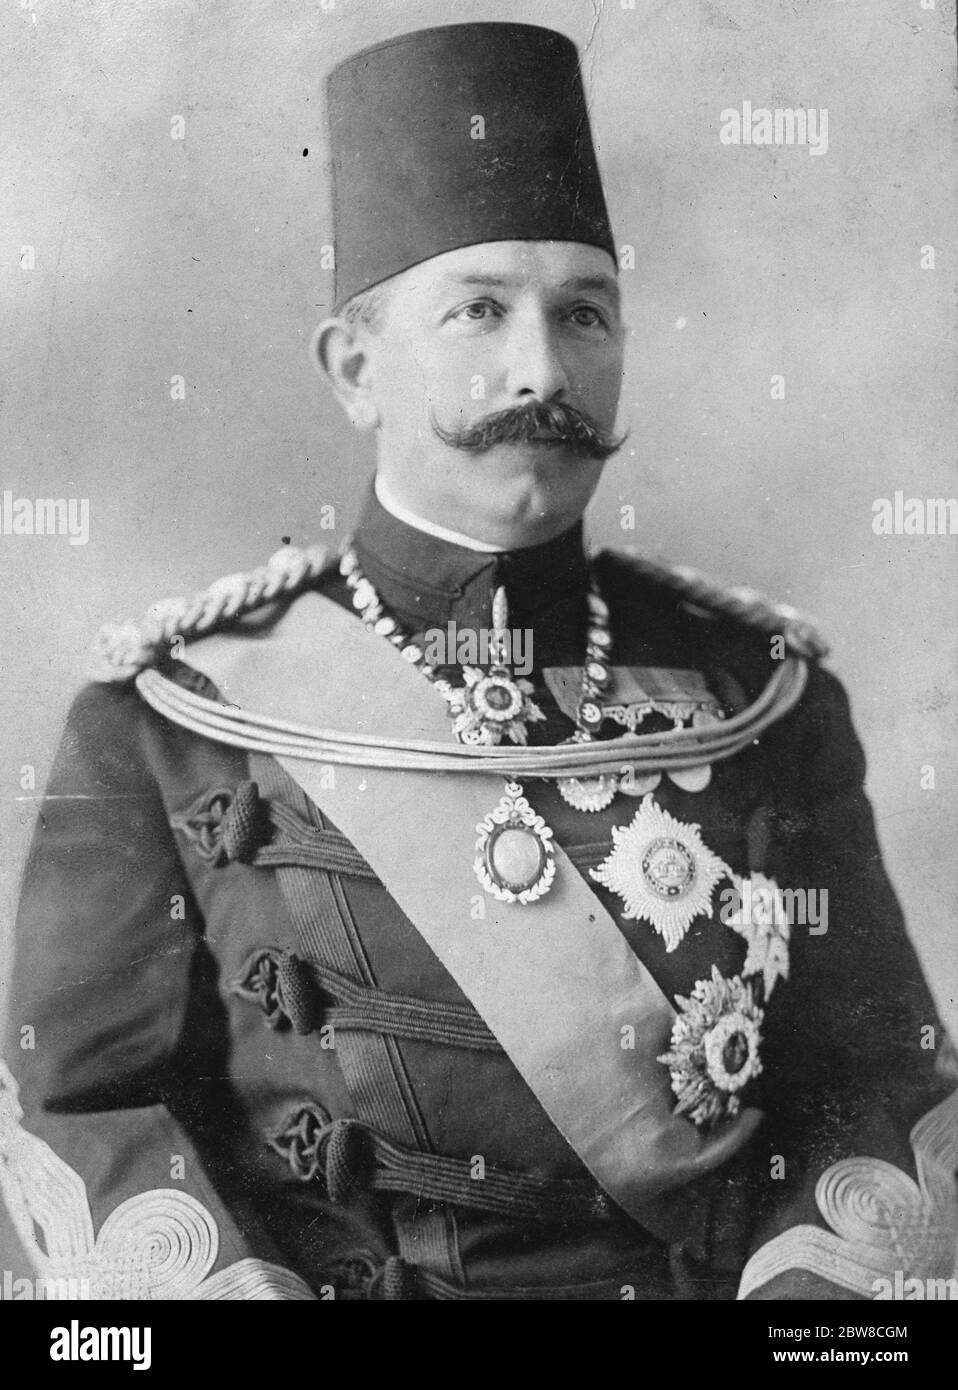 Die Behauptung der ehemaligen Khedive gegen die britische Regierung. Abbas Kilmi Pasha, der letzte Khedive von Ägypten, der behauptet, £ 2, 823, 102 von der britischen Regierung. 21 Dezember 1926 Stockfoto